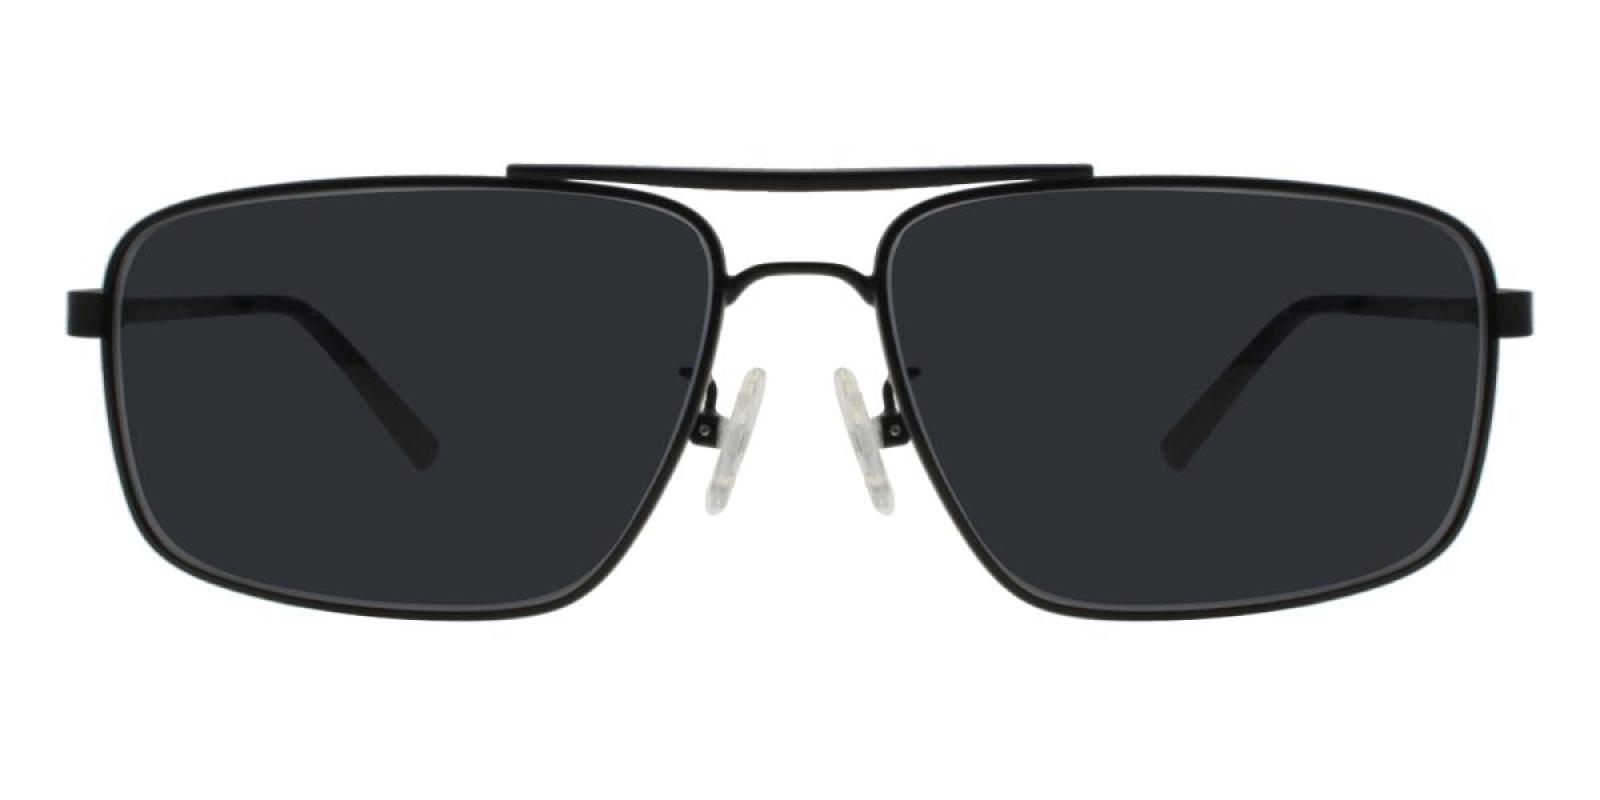 Santorini-Black-Aviator-Metal-Sunglasses-detail